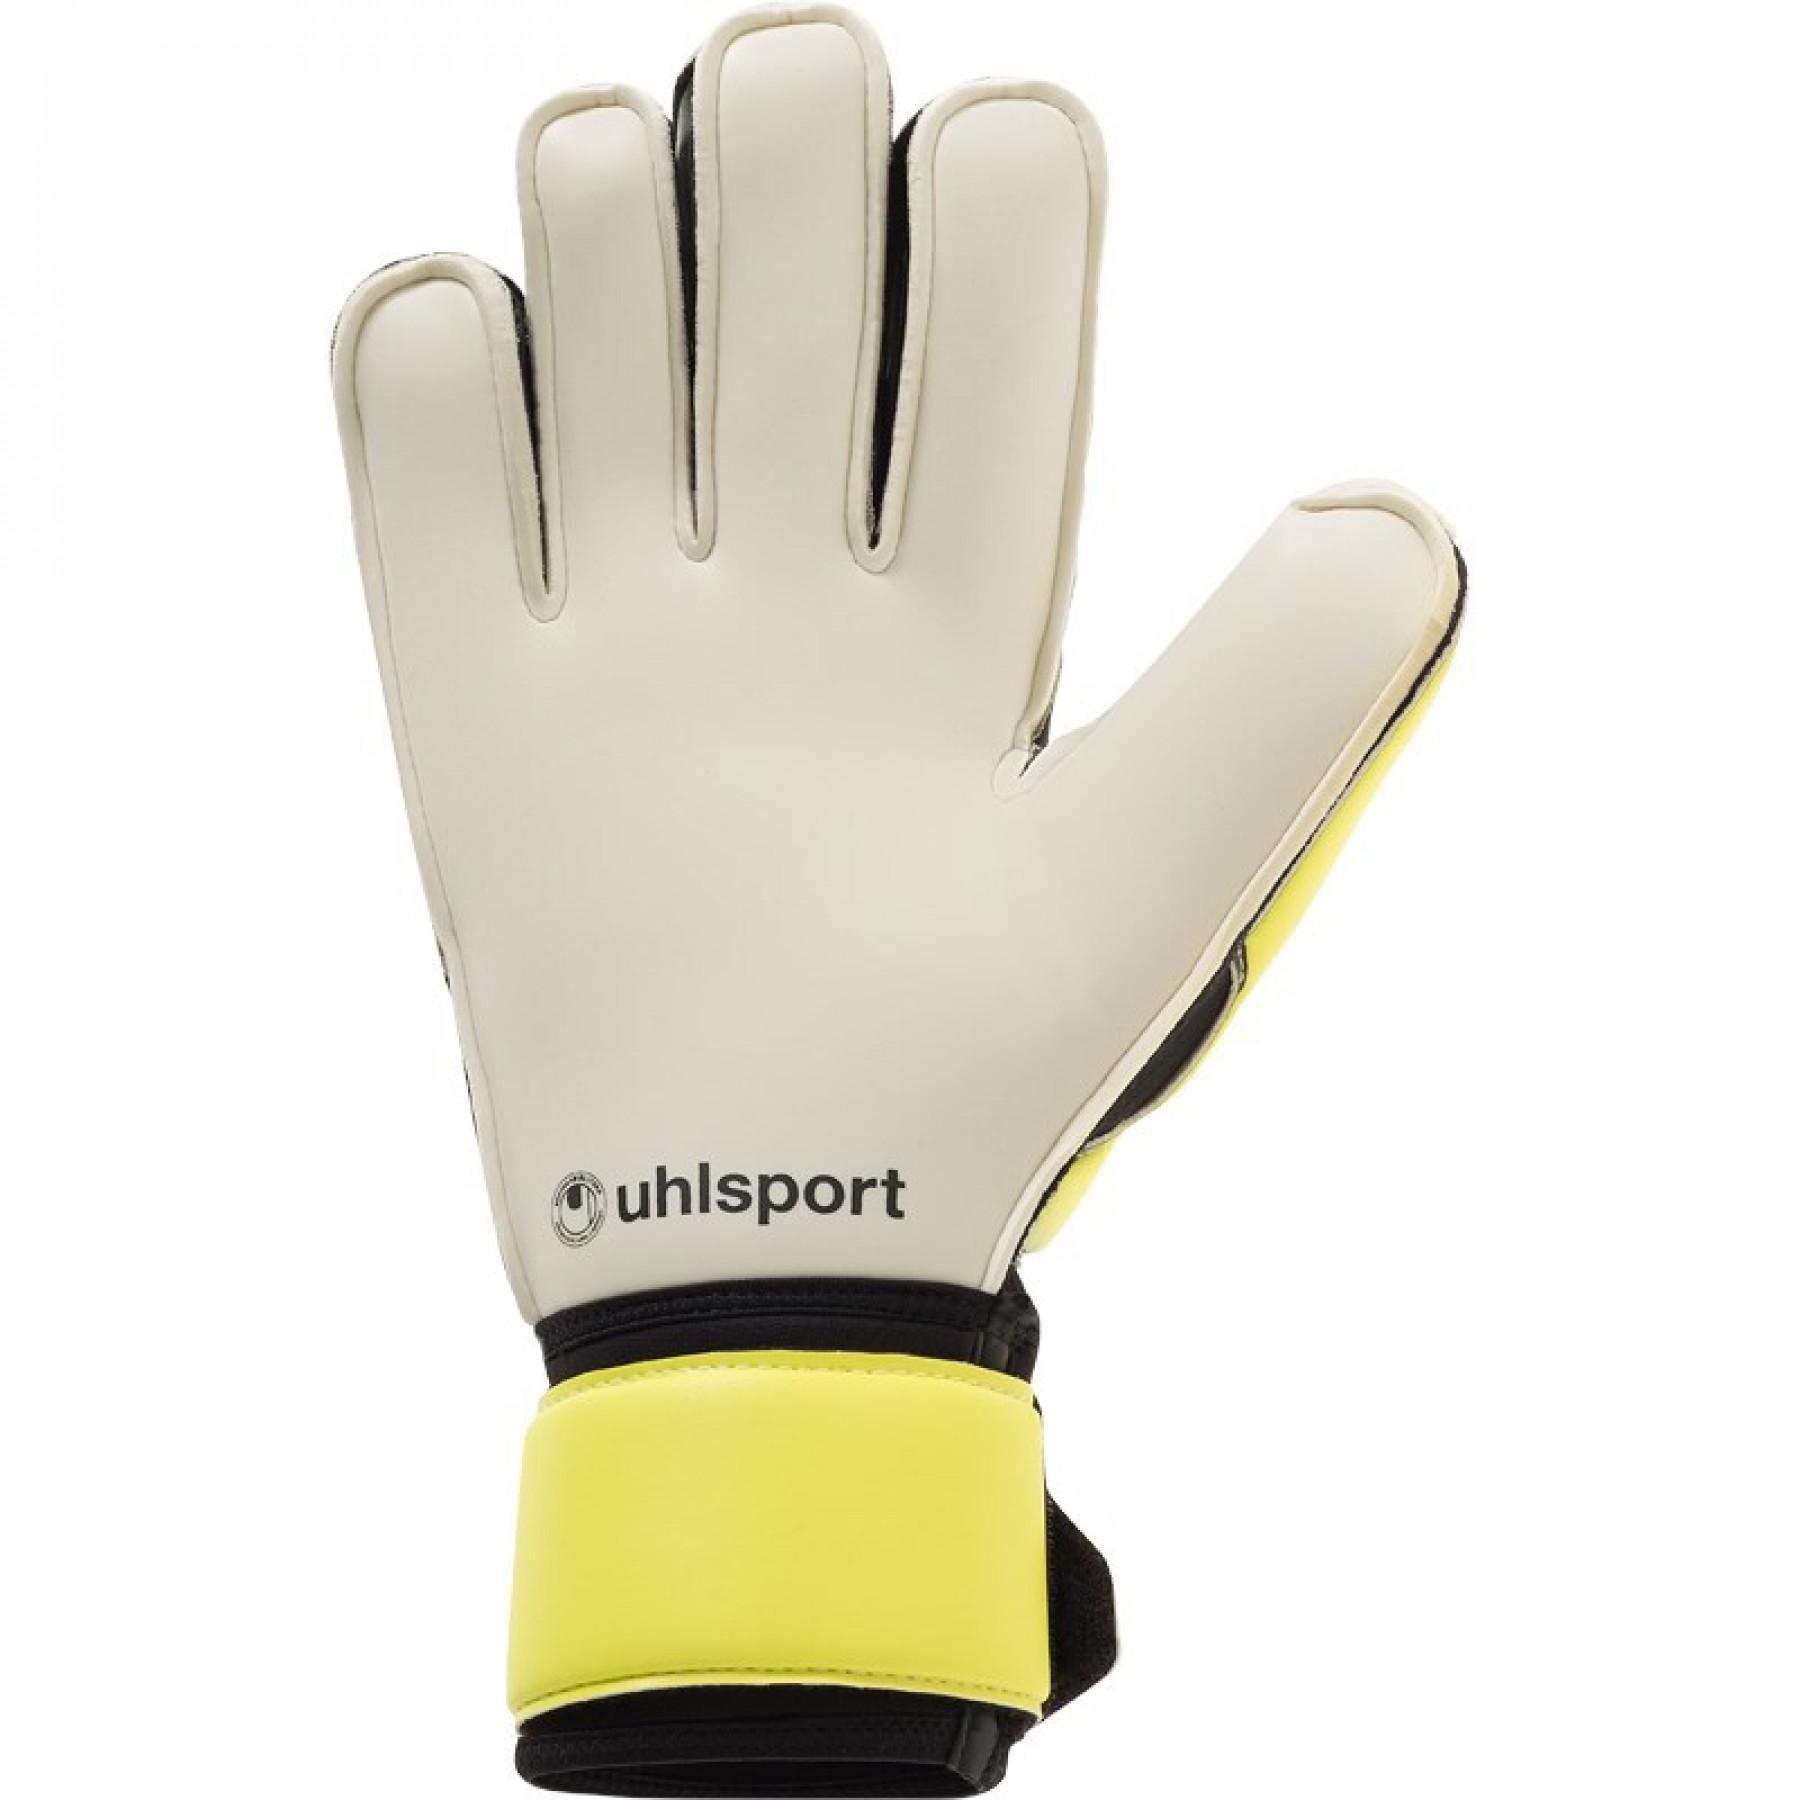 Goalkeeper gloves Uhlsport Absolutgrip Flex Frame Carbon